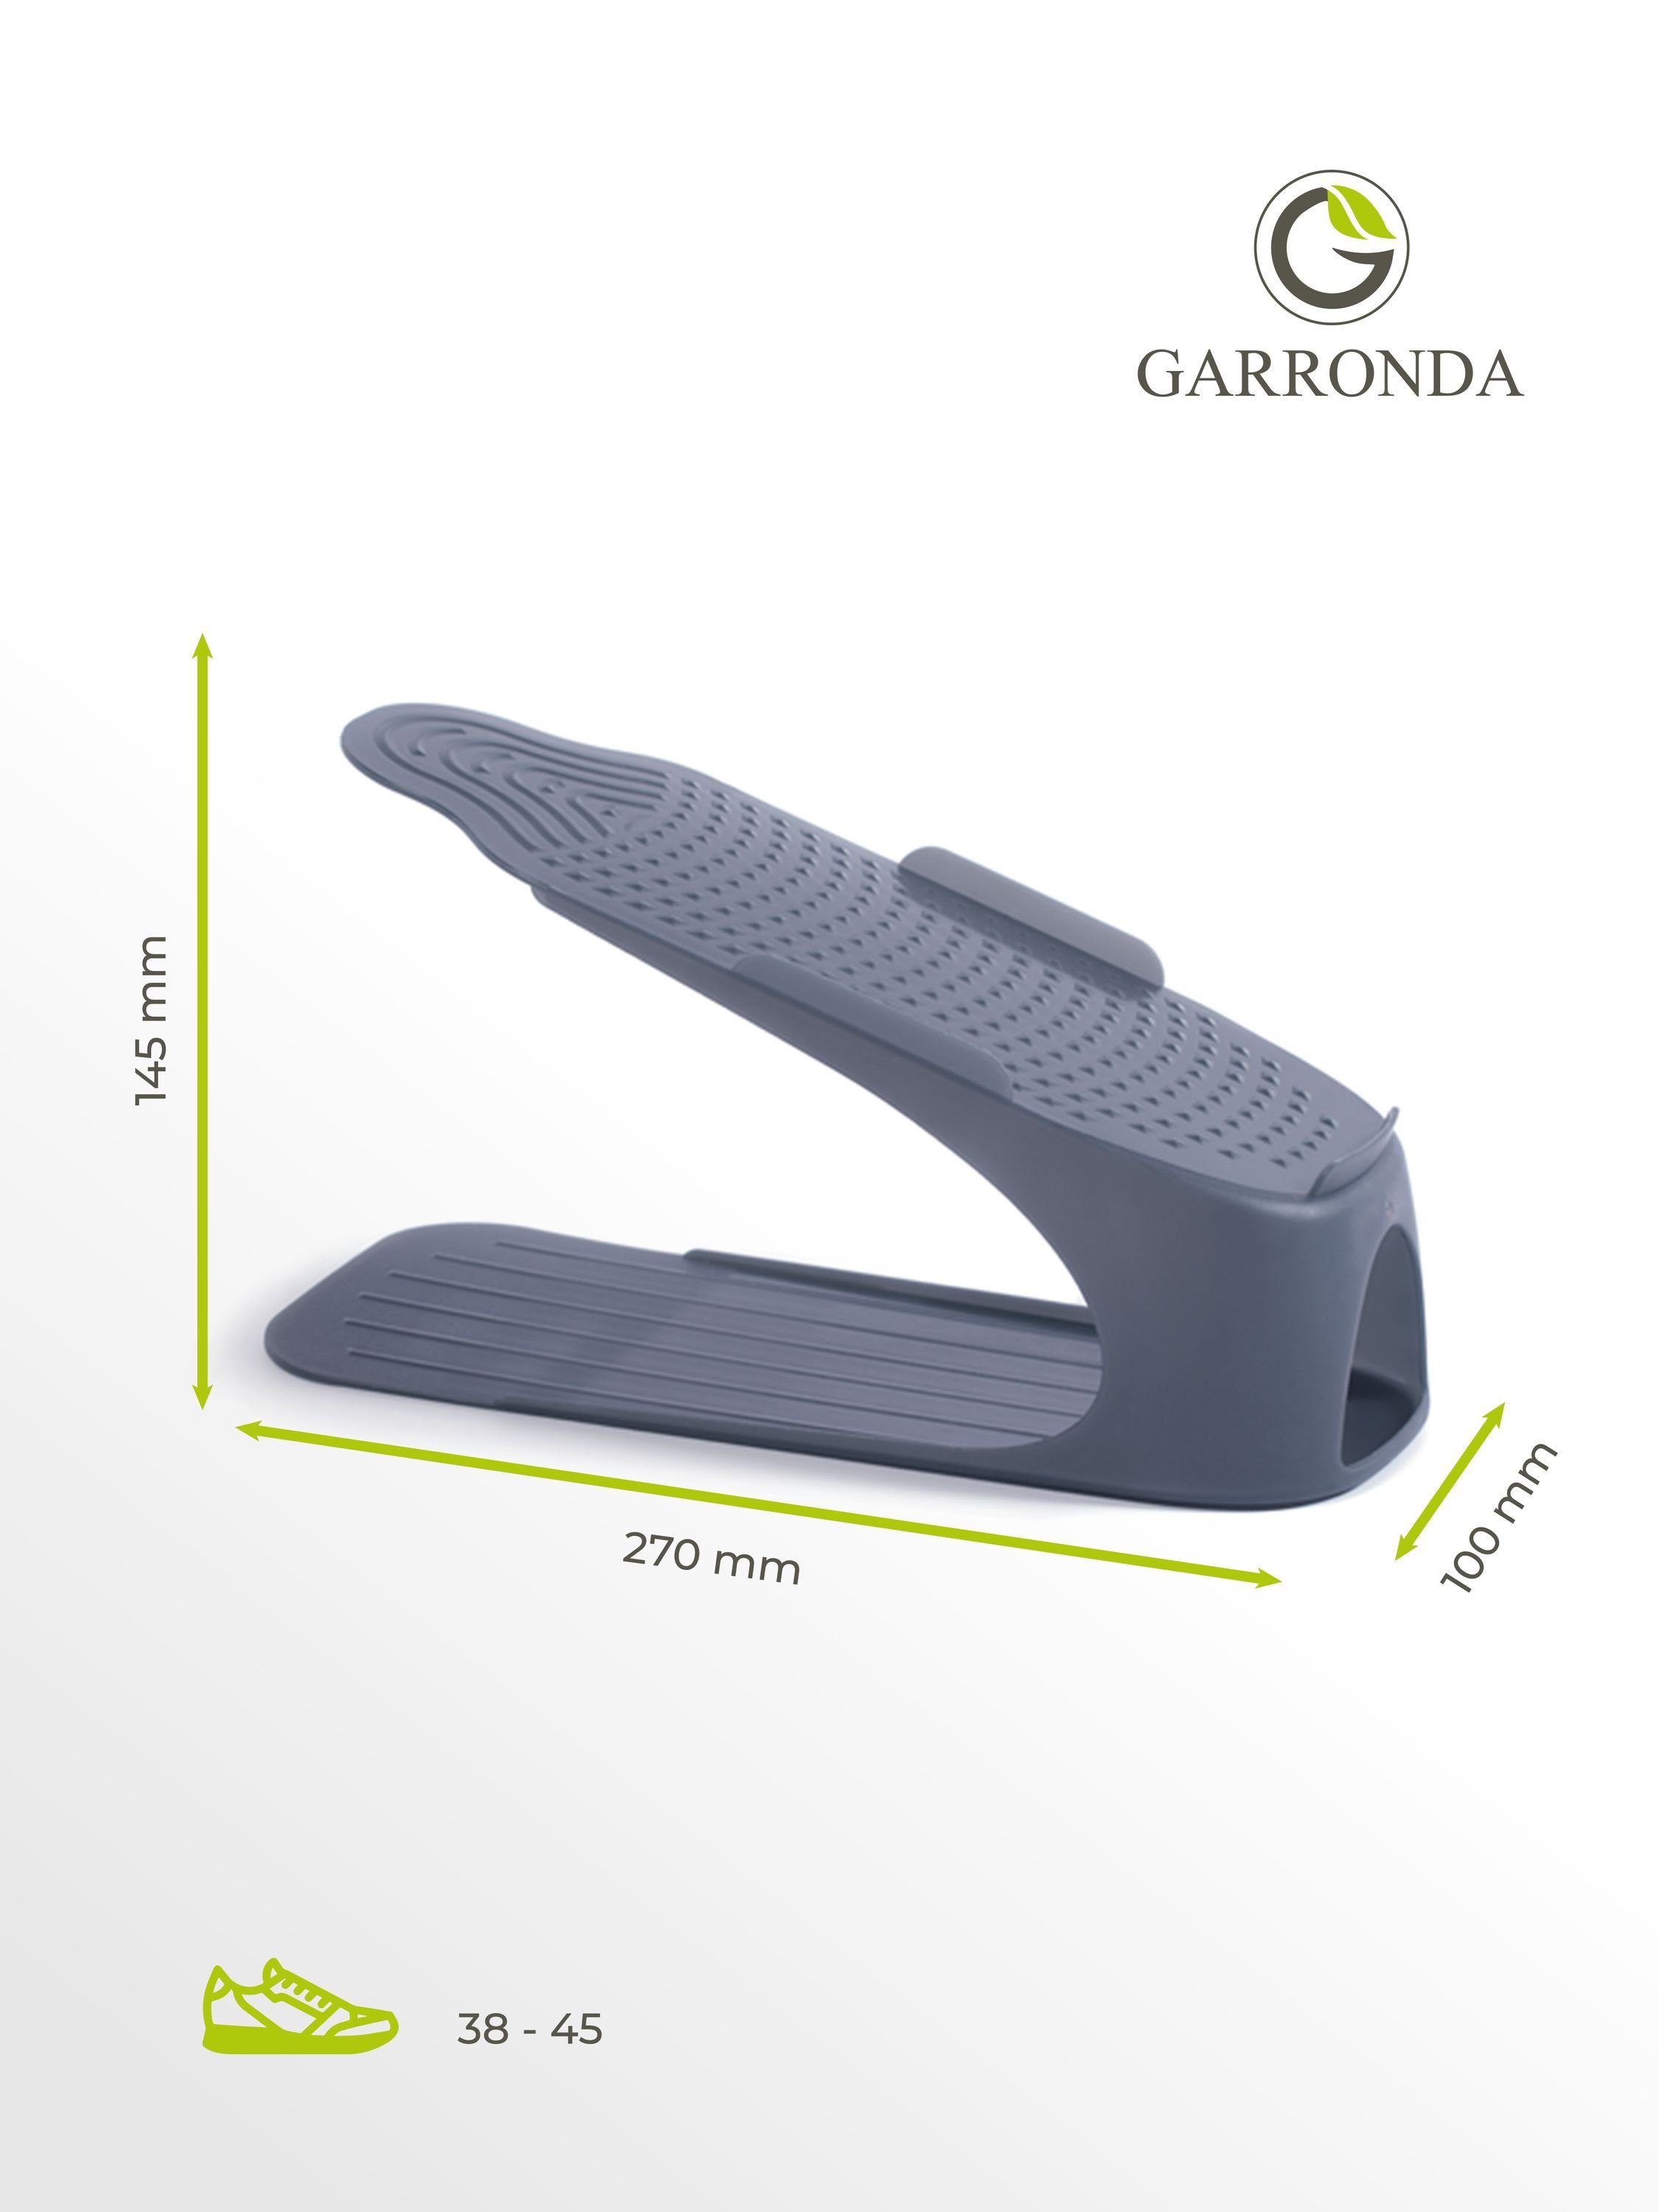 Stück Garronda 4 GD-0053 Größen - 30-38 Schuhabtropfschale Schuhregal 38-45 Schuhorganizer / Anthrazit